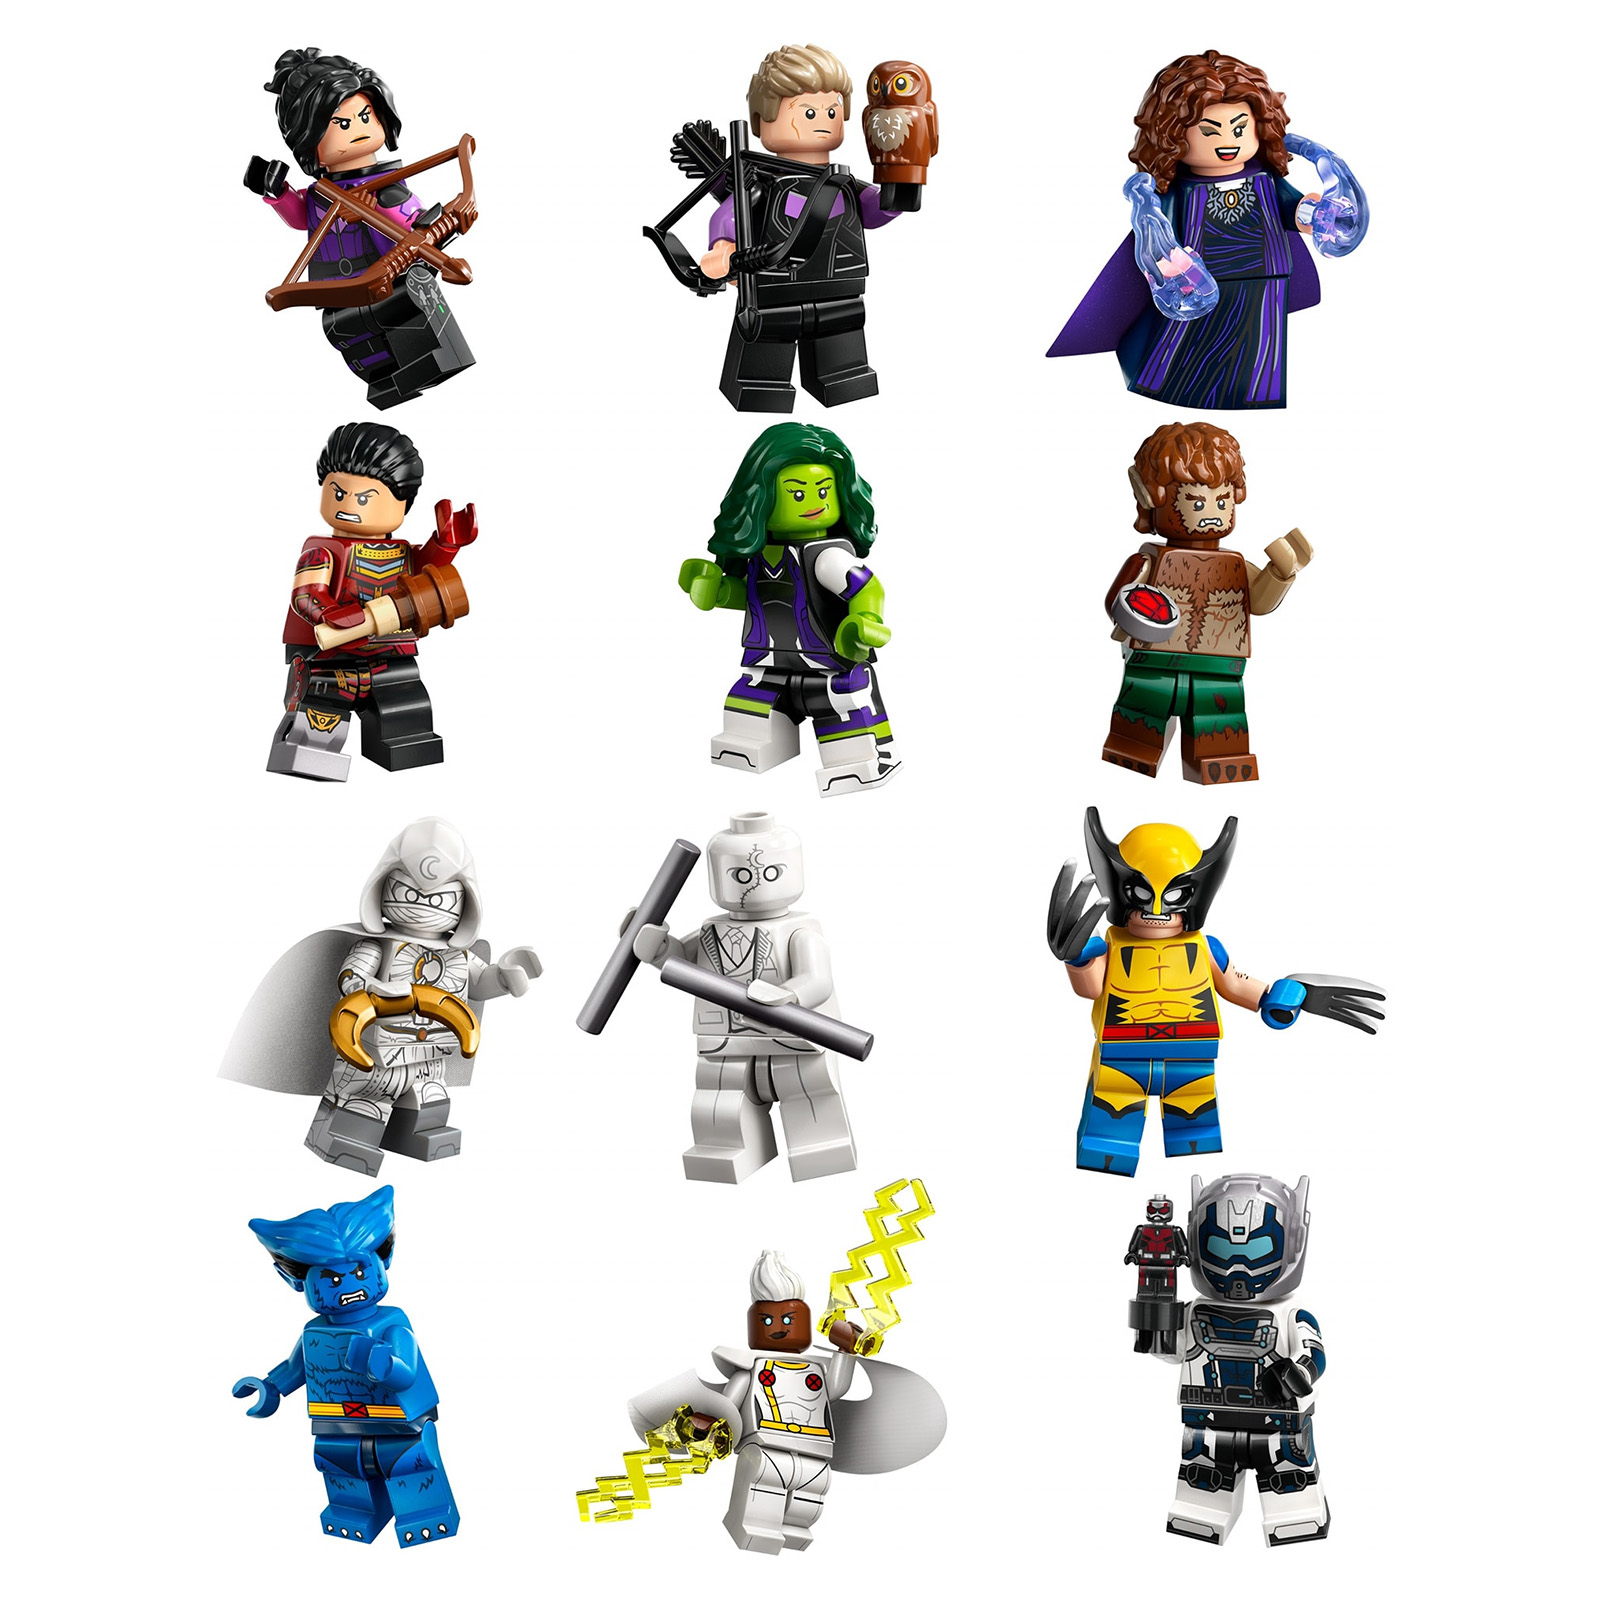 LEGO® 71039 LEGO® Minifigures: Edición Marvel Serie 2 Caja Completa